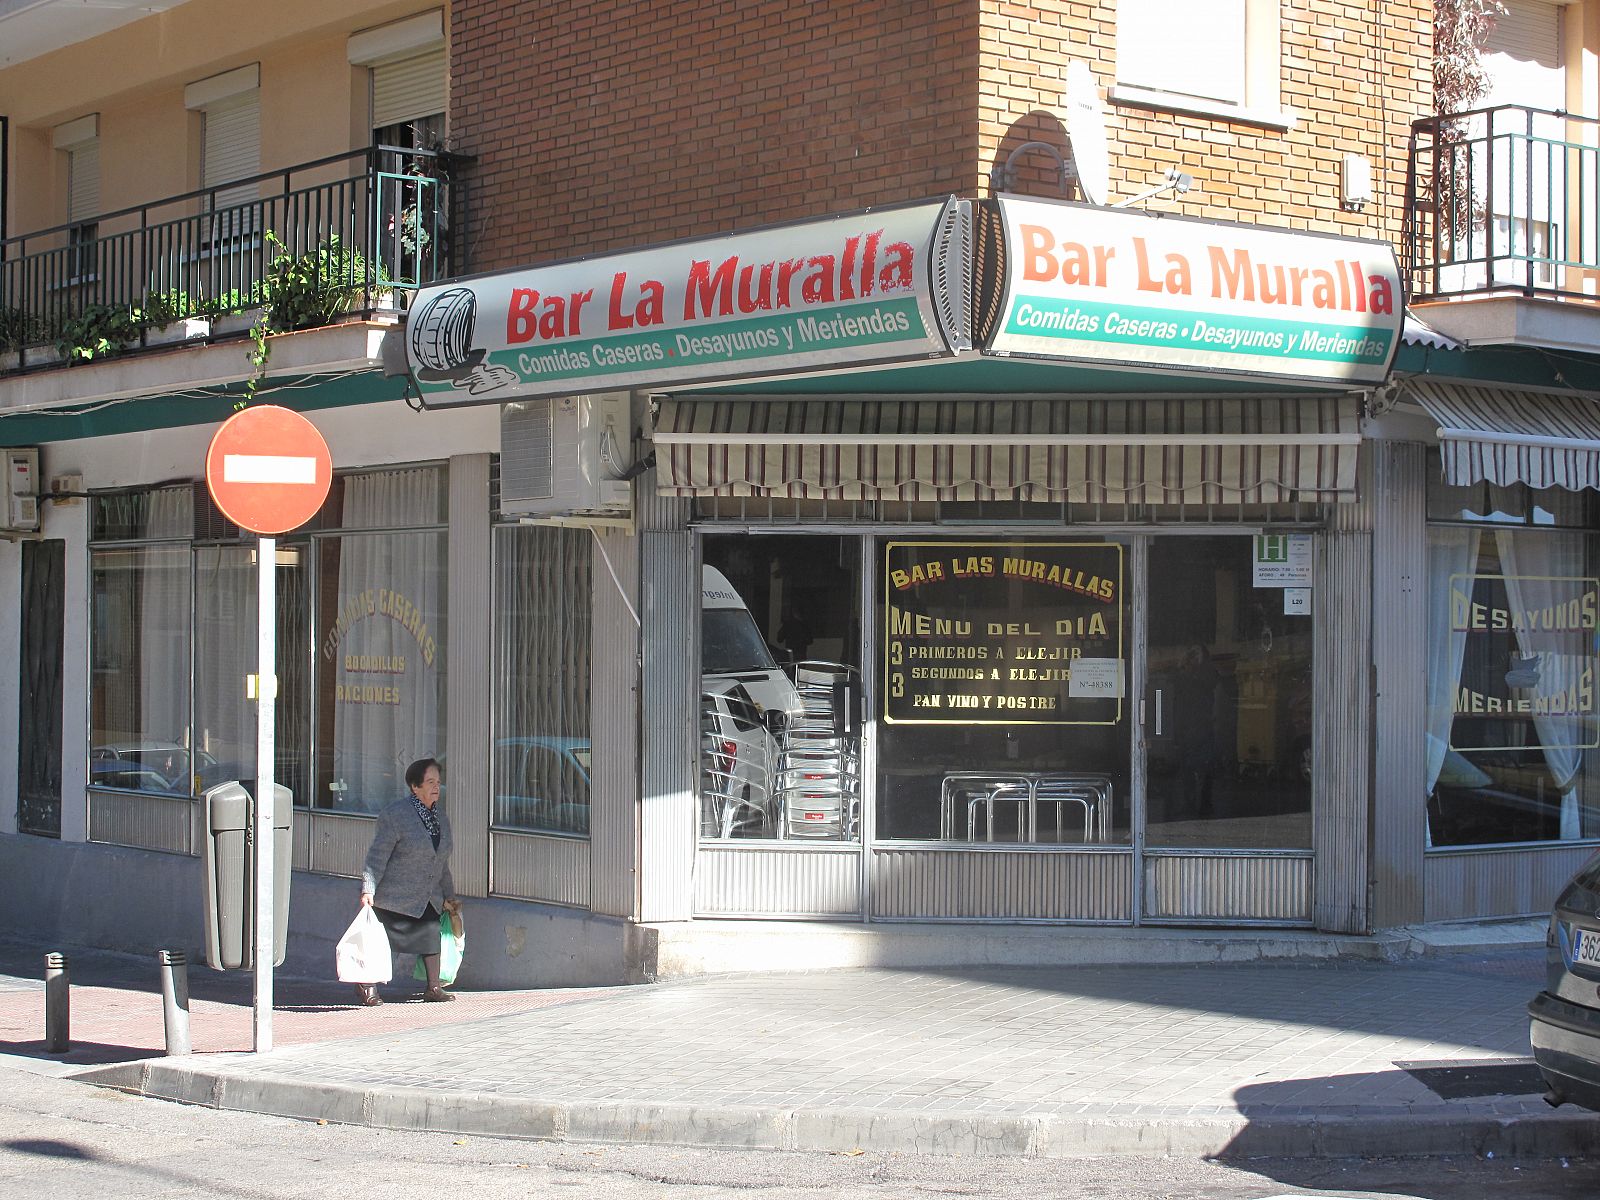 El bar La Muralla está ubicado en el barrio madrileño de Villaverde Alto